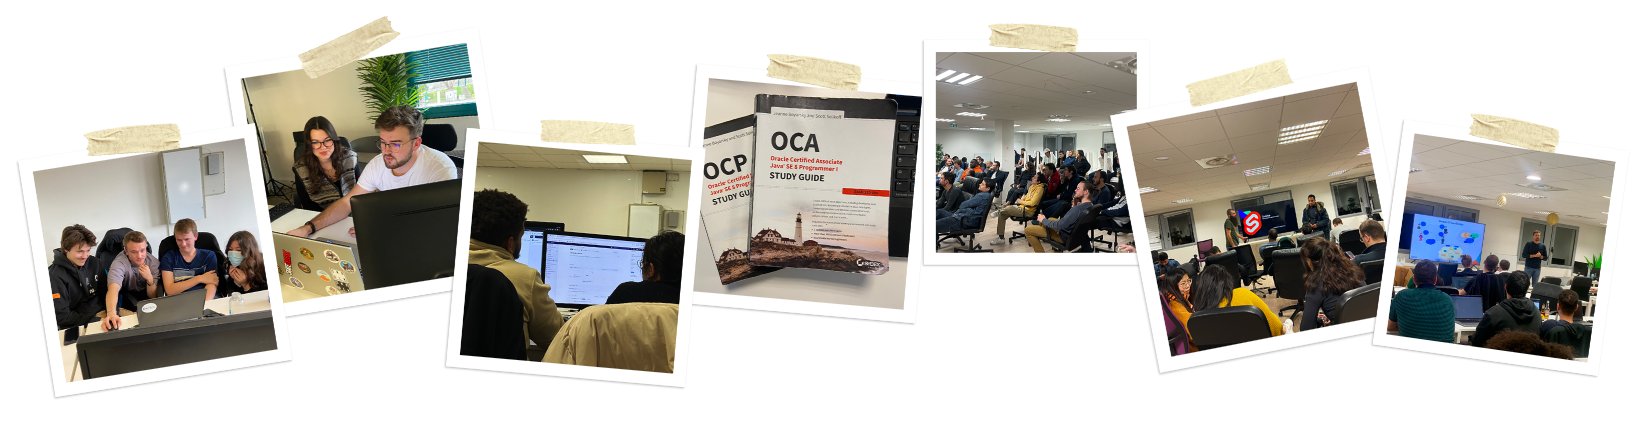 Montage de photos montrant l’équipe d’Oxyl collaborant devant des ordinateurs, des livres d’OCA et OCP et lors des TechNights